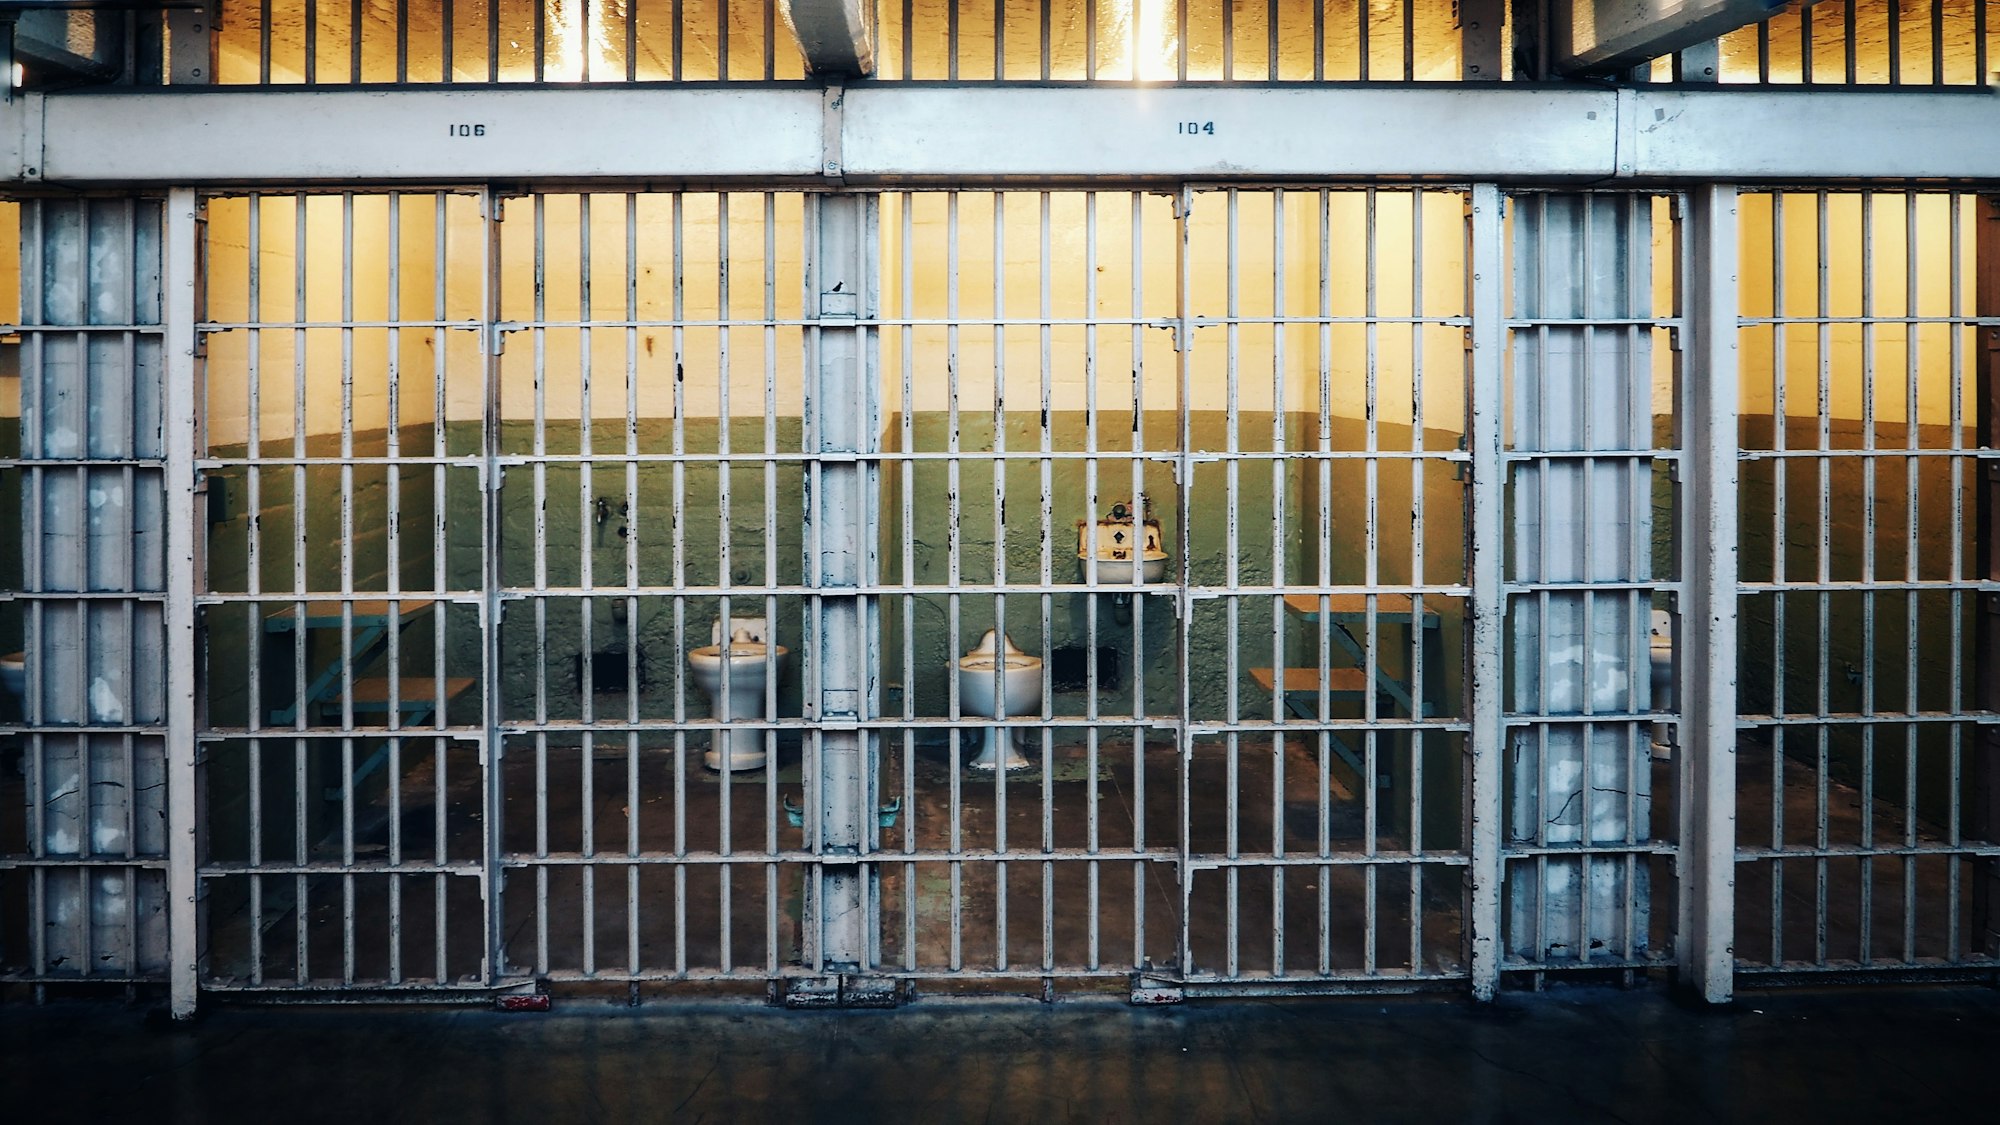 Тюрьма в Нью-Мексико была вынуждена закрыться из-за кибератаки выведшей из строя камеры наблюдения и двери